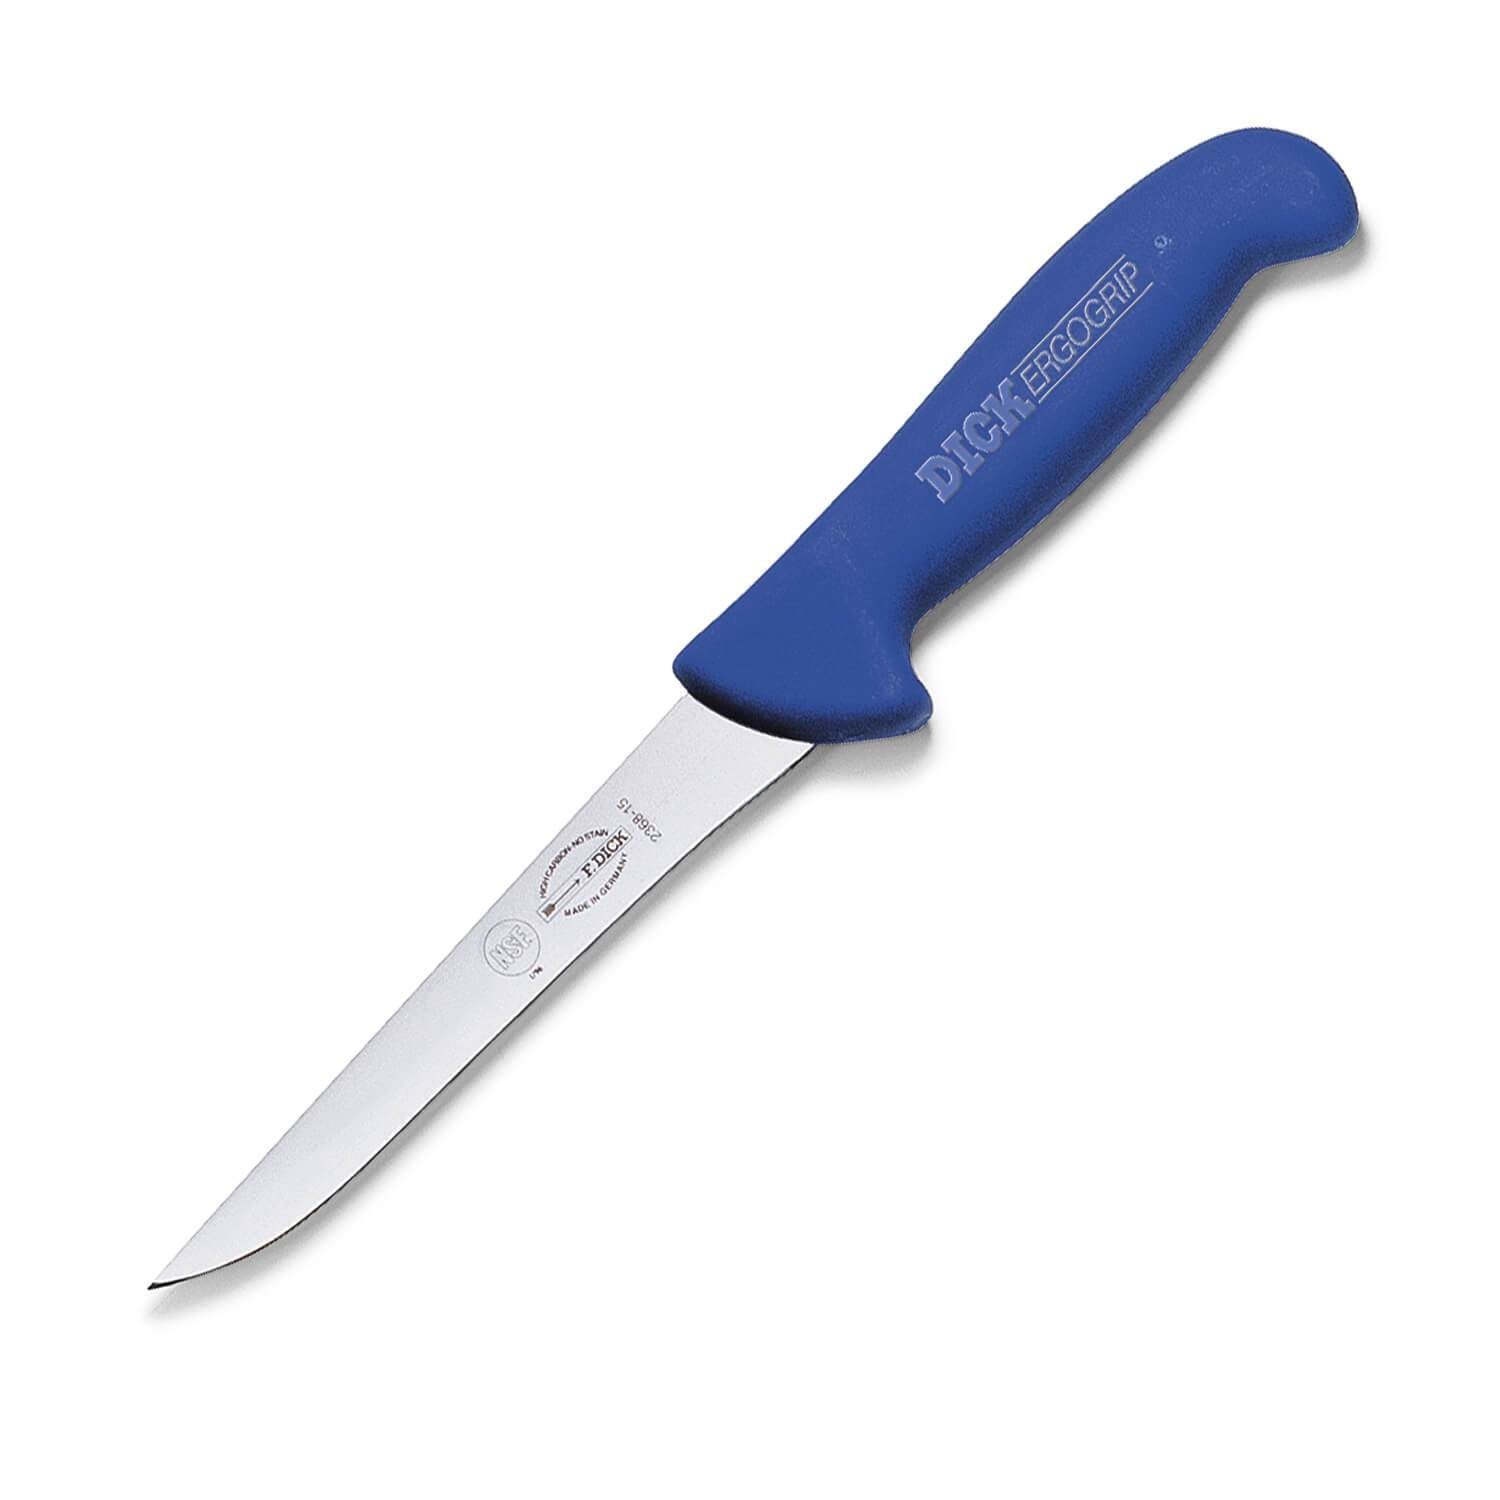 8255900 ErgoGrip Knife Set, 3-piece, includes (1